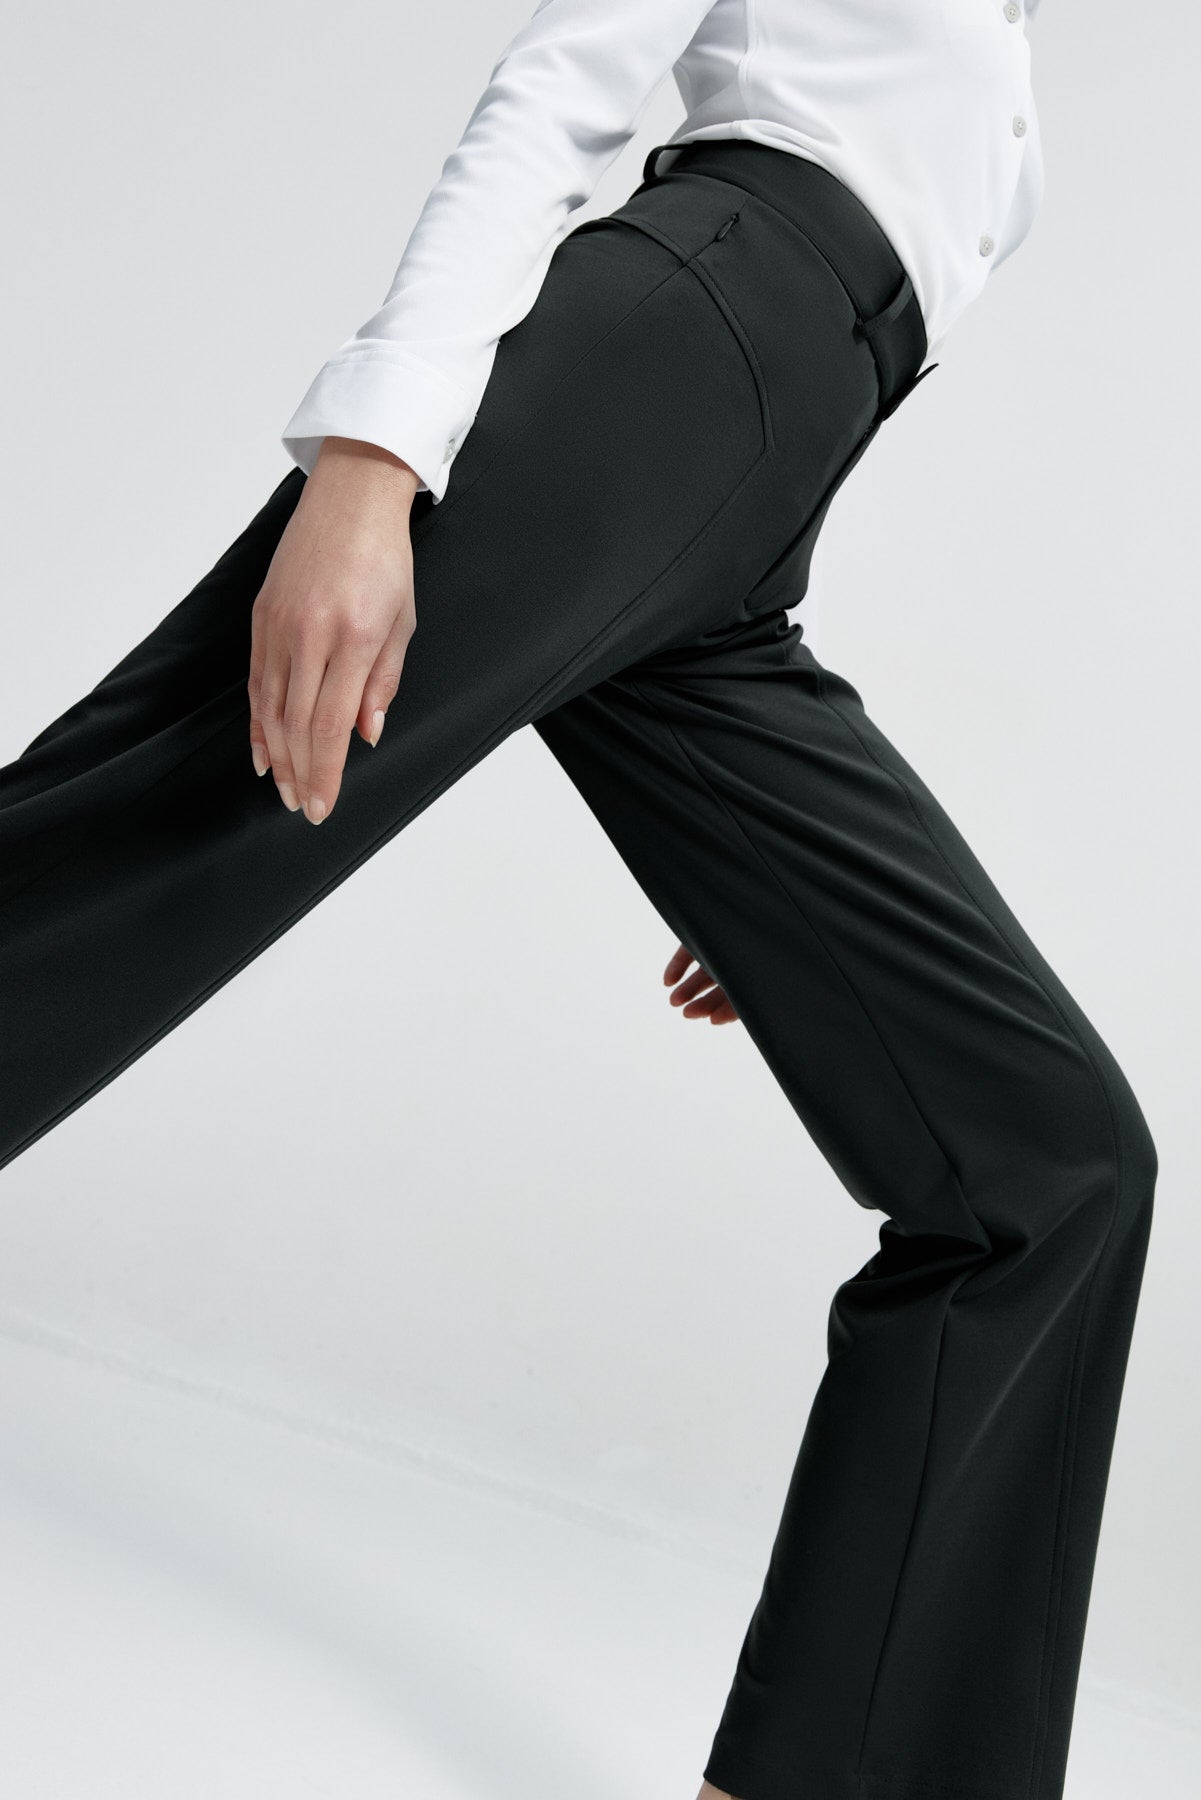 Pantalón de mujer negro de Sepiia, versátil y elegante, resistente a manchas y olores. Foto fexibilidad